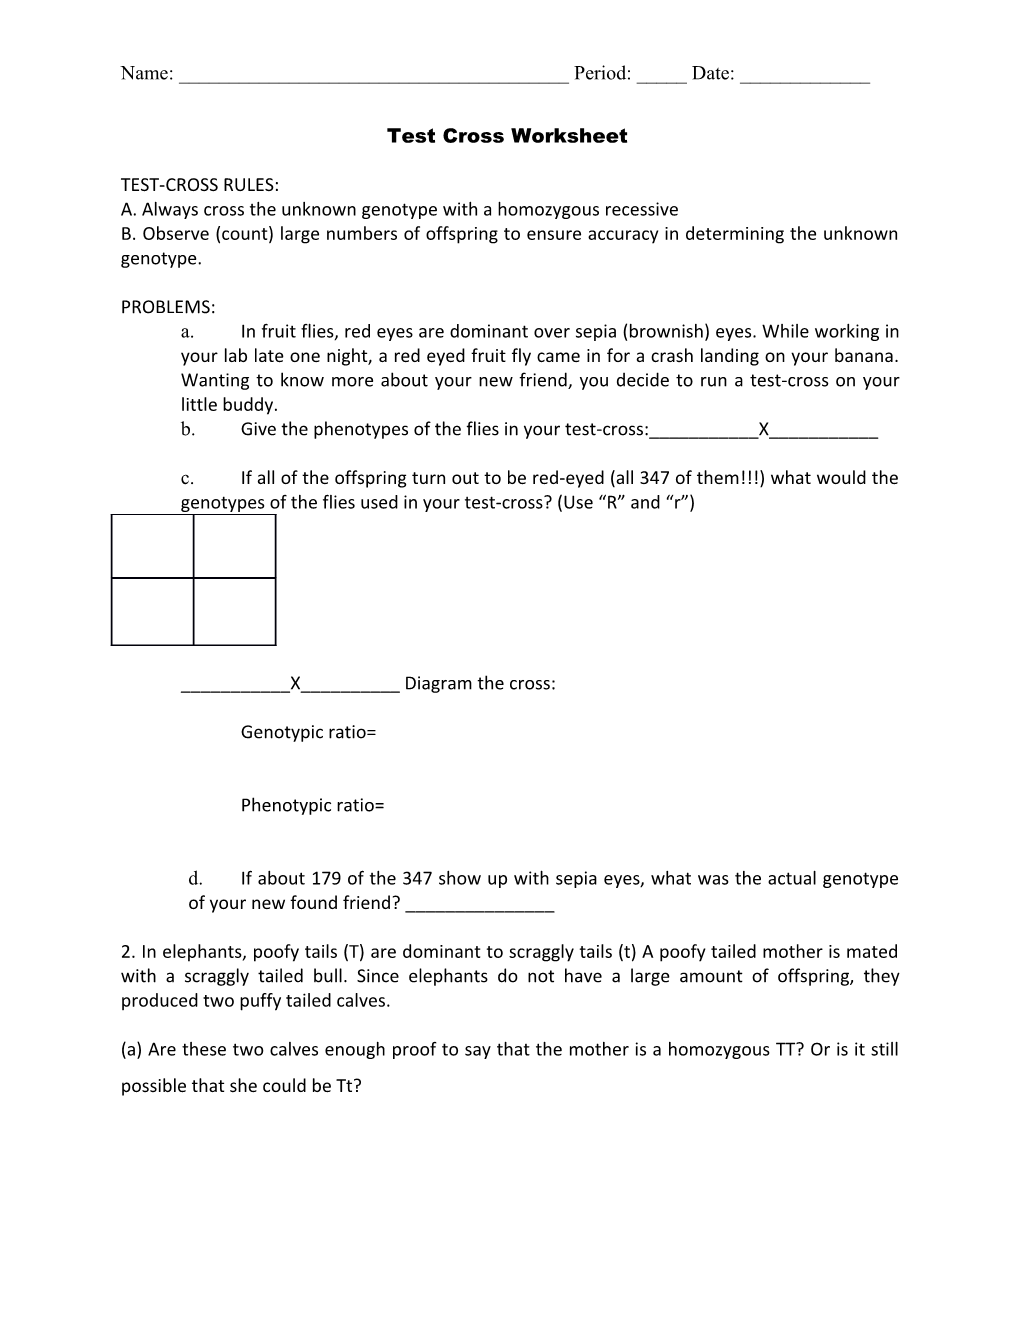 Test Cross Worksheet (A